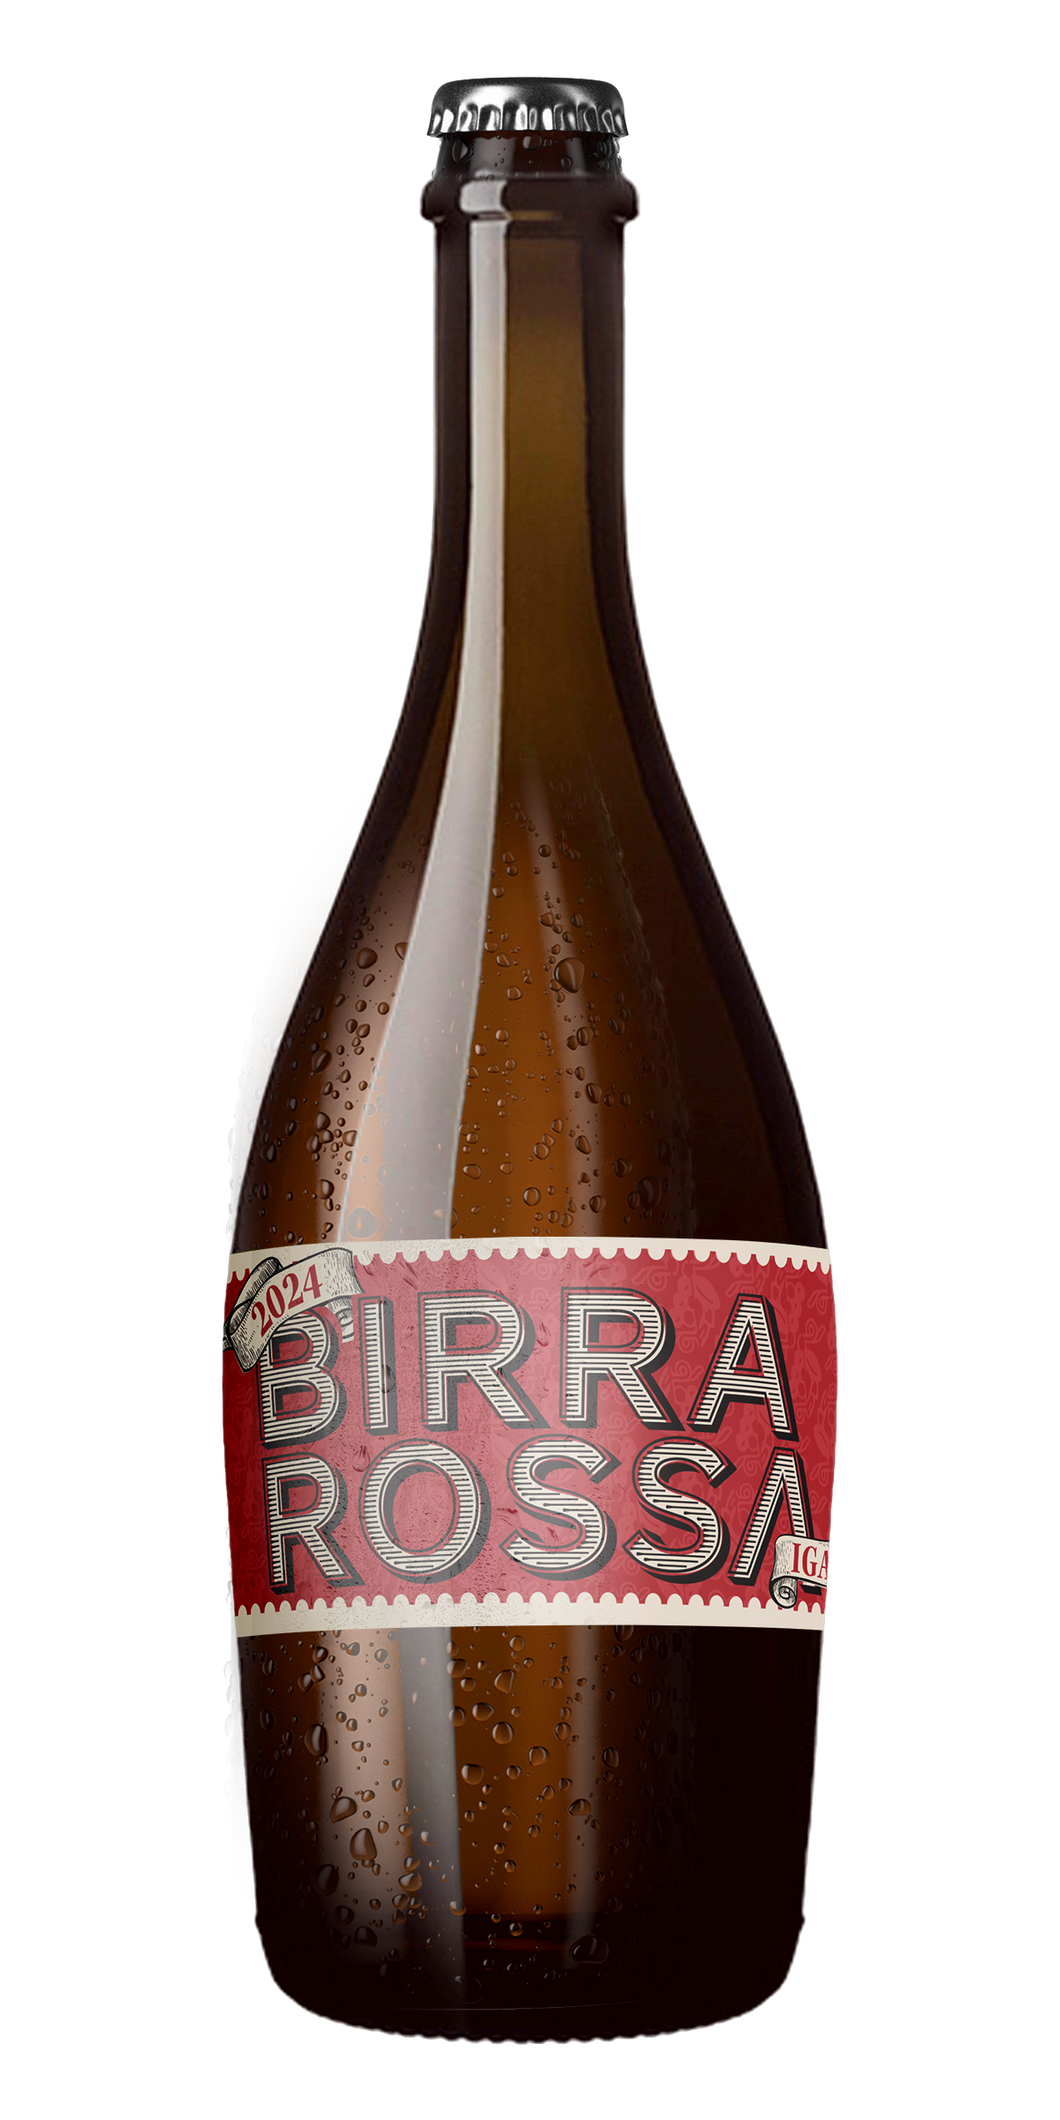 Birra Rossa IGA